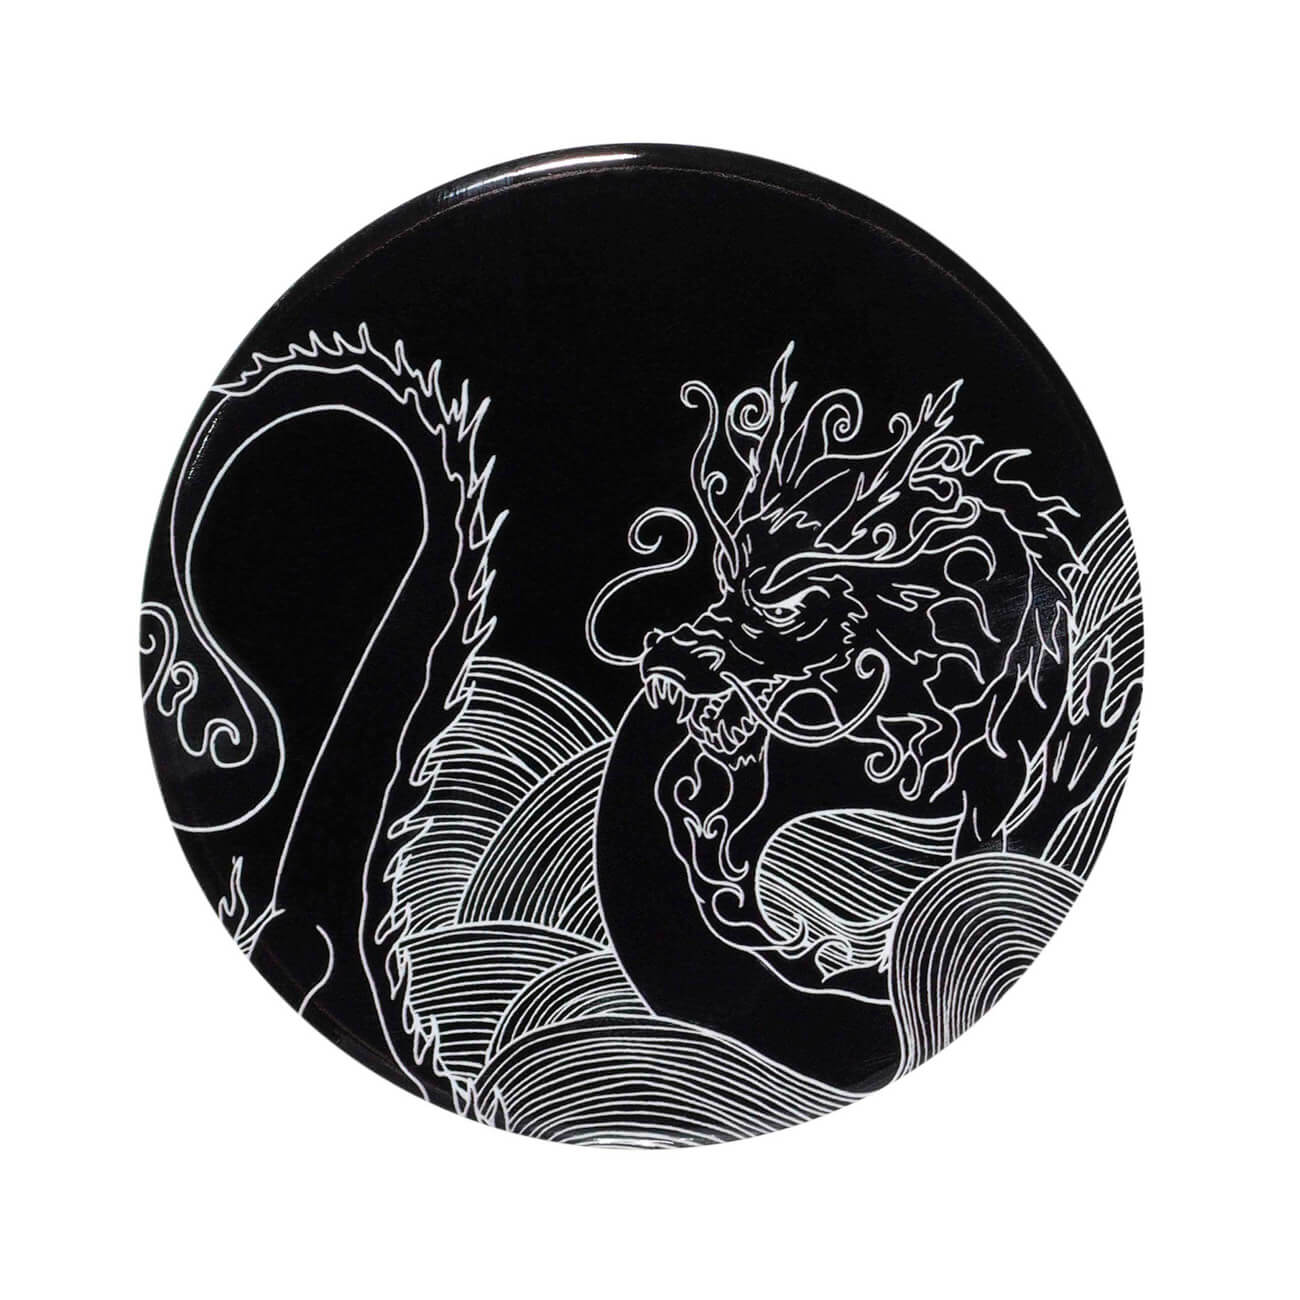 Подставка под кружку, 11 см, керамика/пробка, круглая, черная, Дракон, Dragon dayron